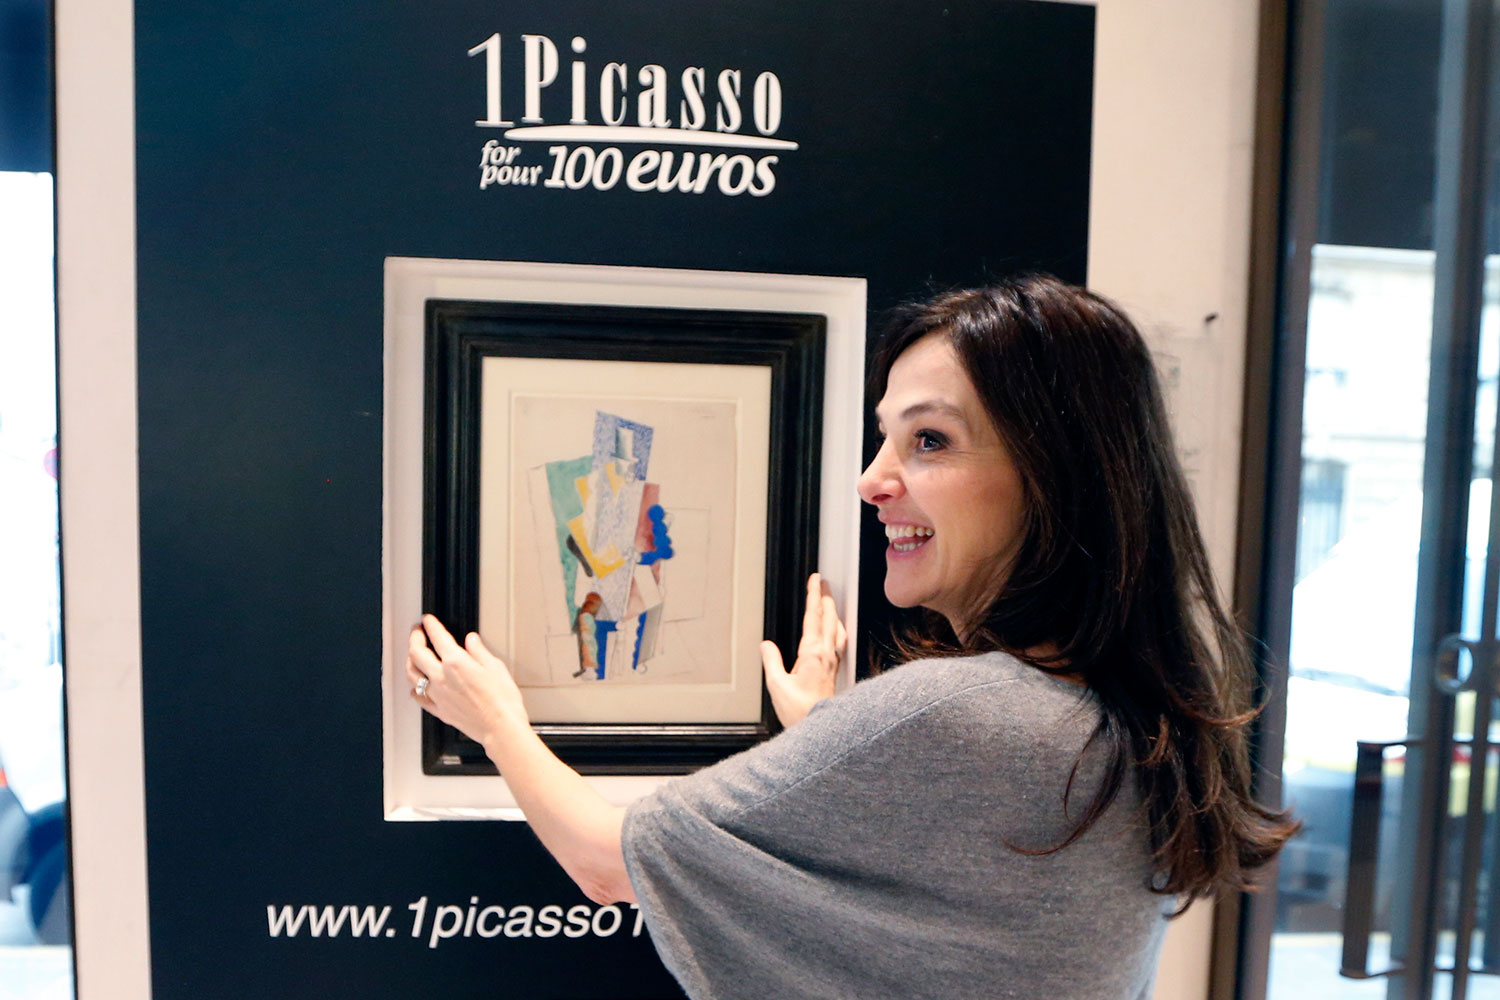 Un aficionado al arte consigue una obra de Picasso por 100 euros